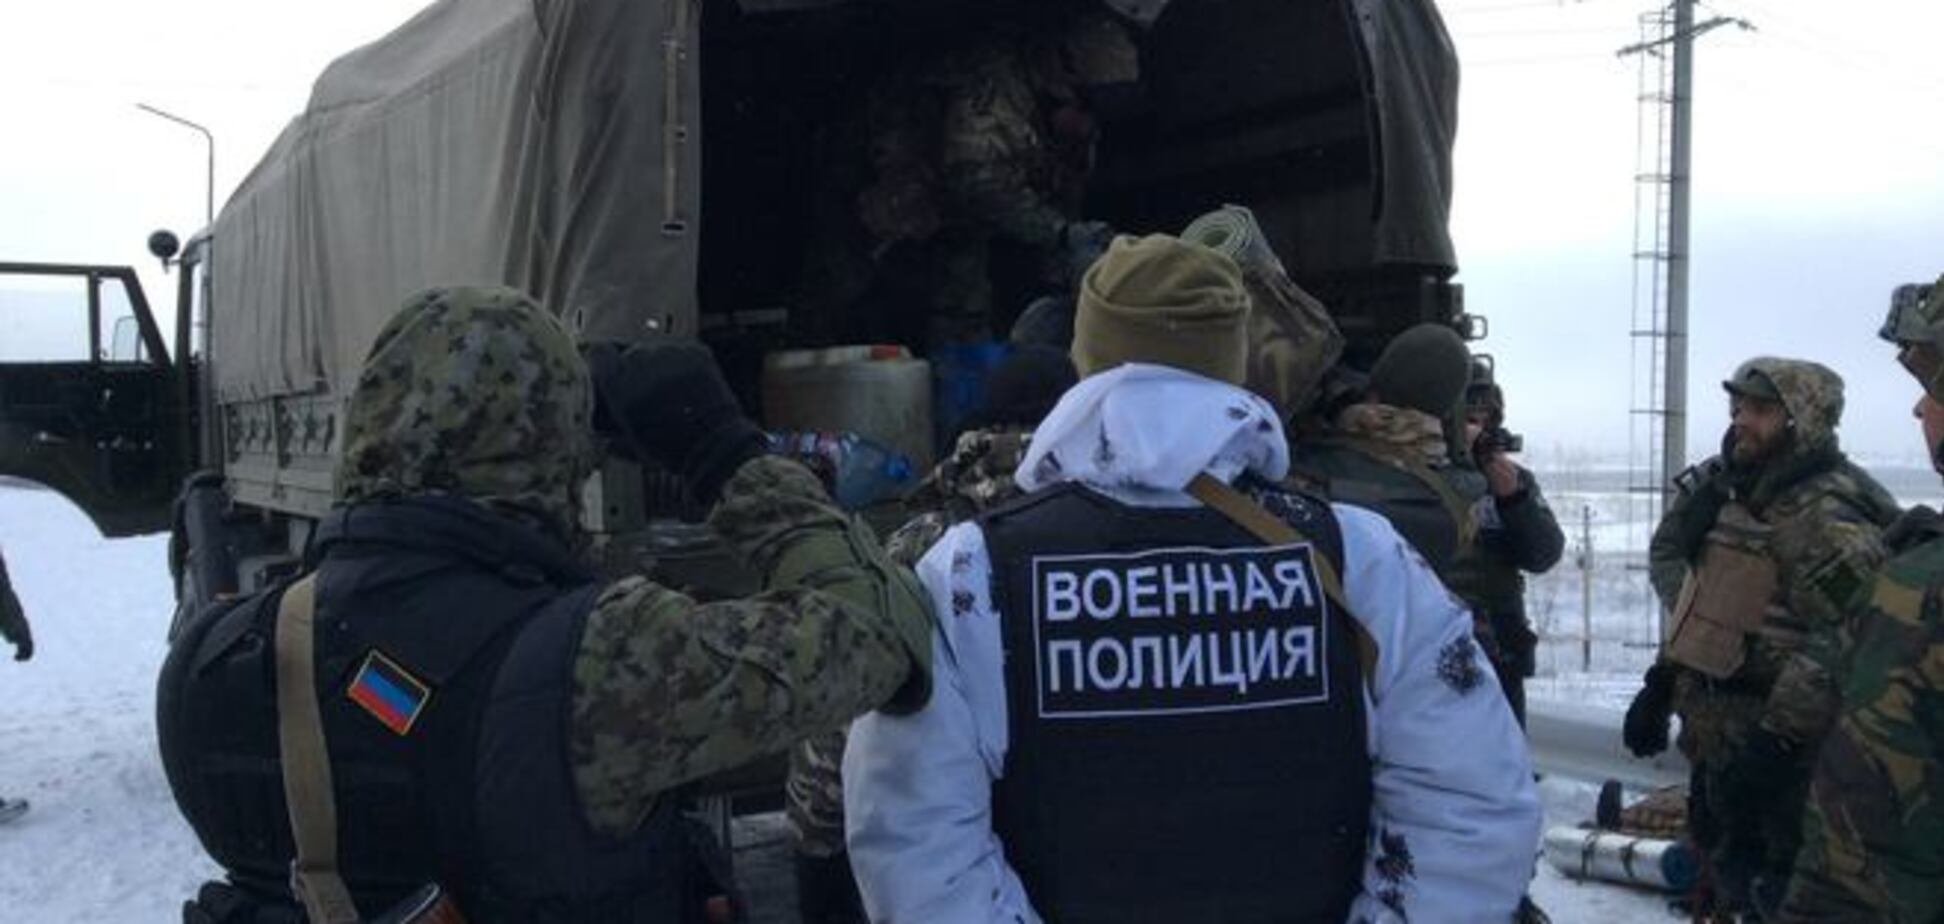 В Донецк прибыла группа российской бронетехники с военными 'неславянской внешности' - ИС